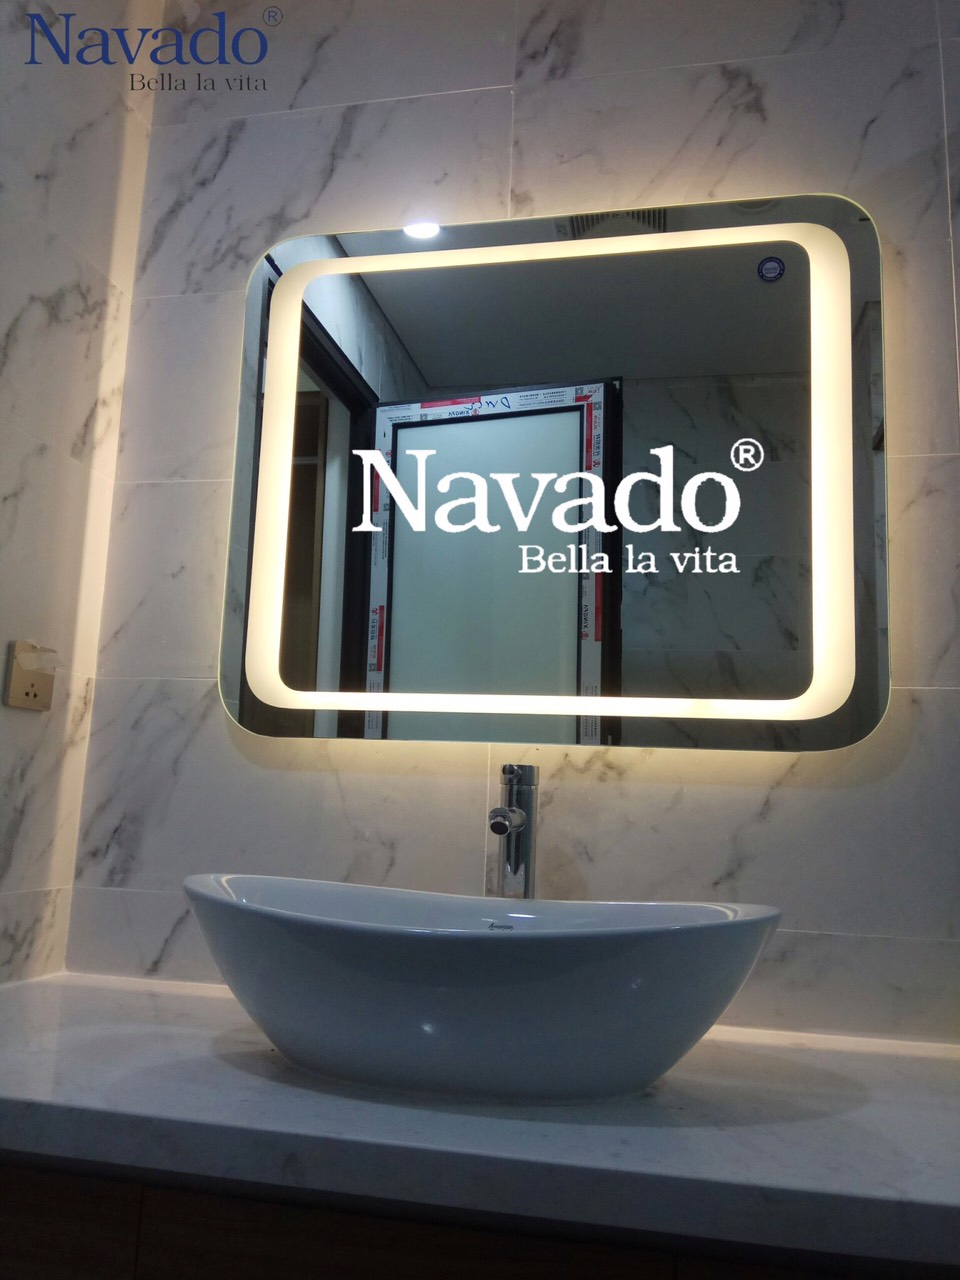 Gương đèn LED chữ nhật bo góc phòng tắm là sản phẩm vô cùng thú vị. Với thiết kế bo góc chữ nhật, gương trở nên sang trọng và ấn tượng hơn. Gương đèn LED còn giúp bạn có một phòng tắm với ánh sáng tổng hợp tốt nhất, không gian sáng rực, trẻ trung và hiện đại.